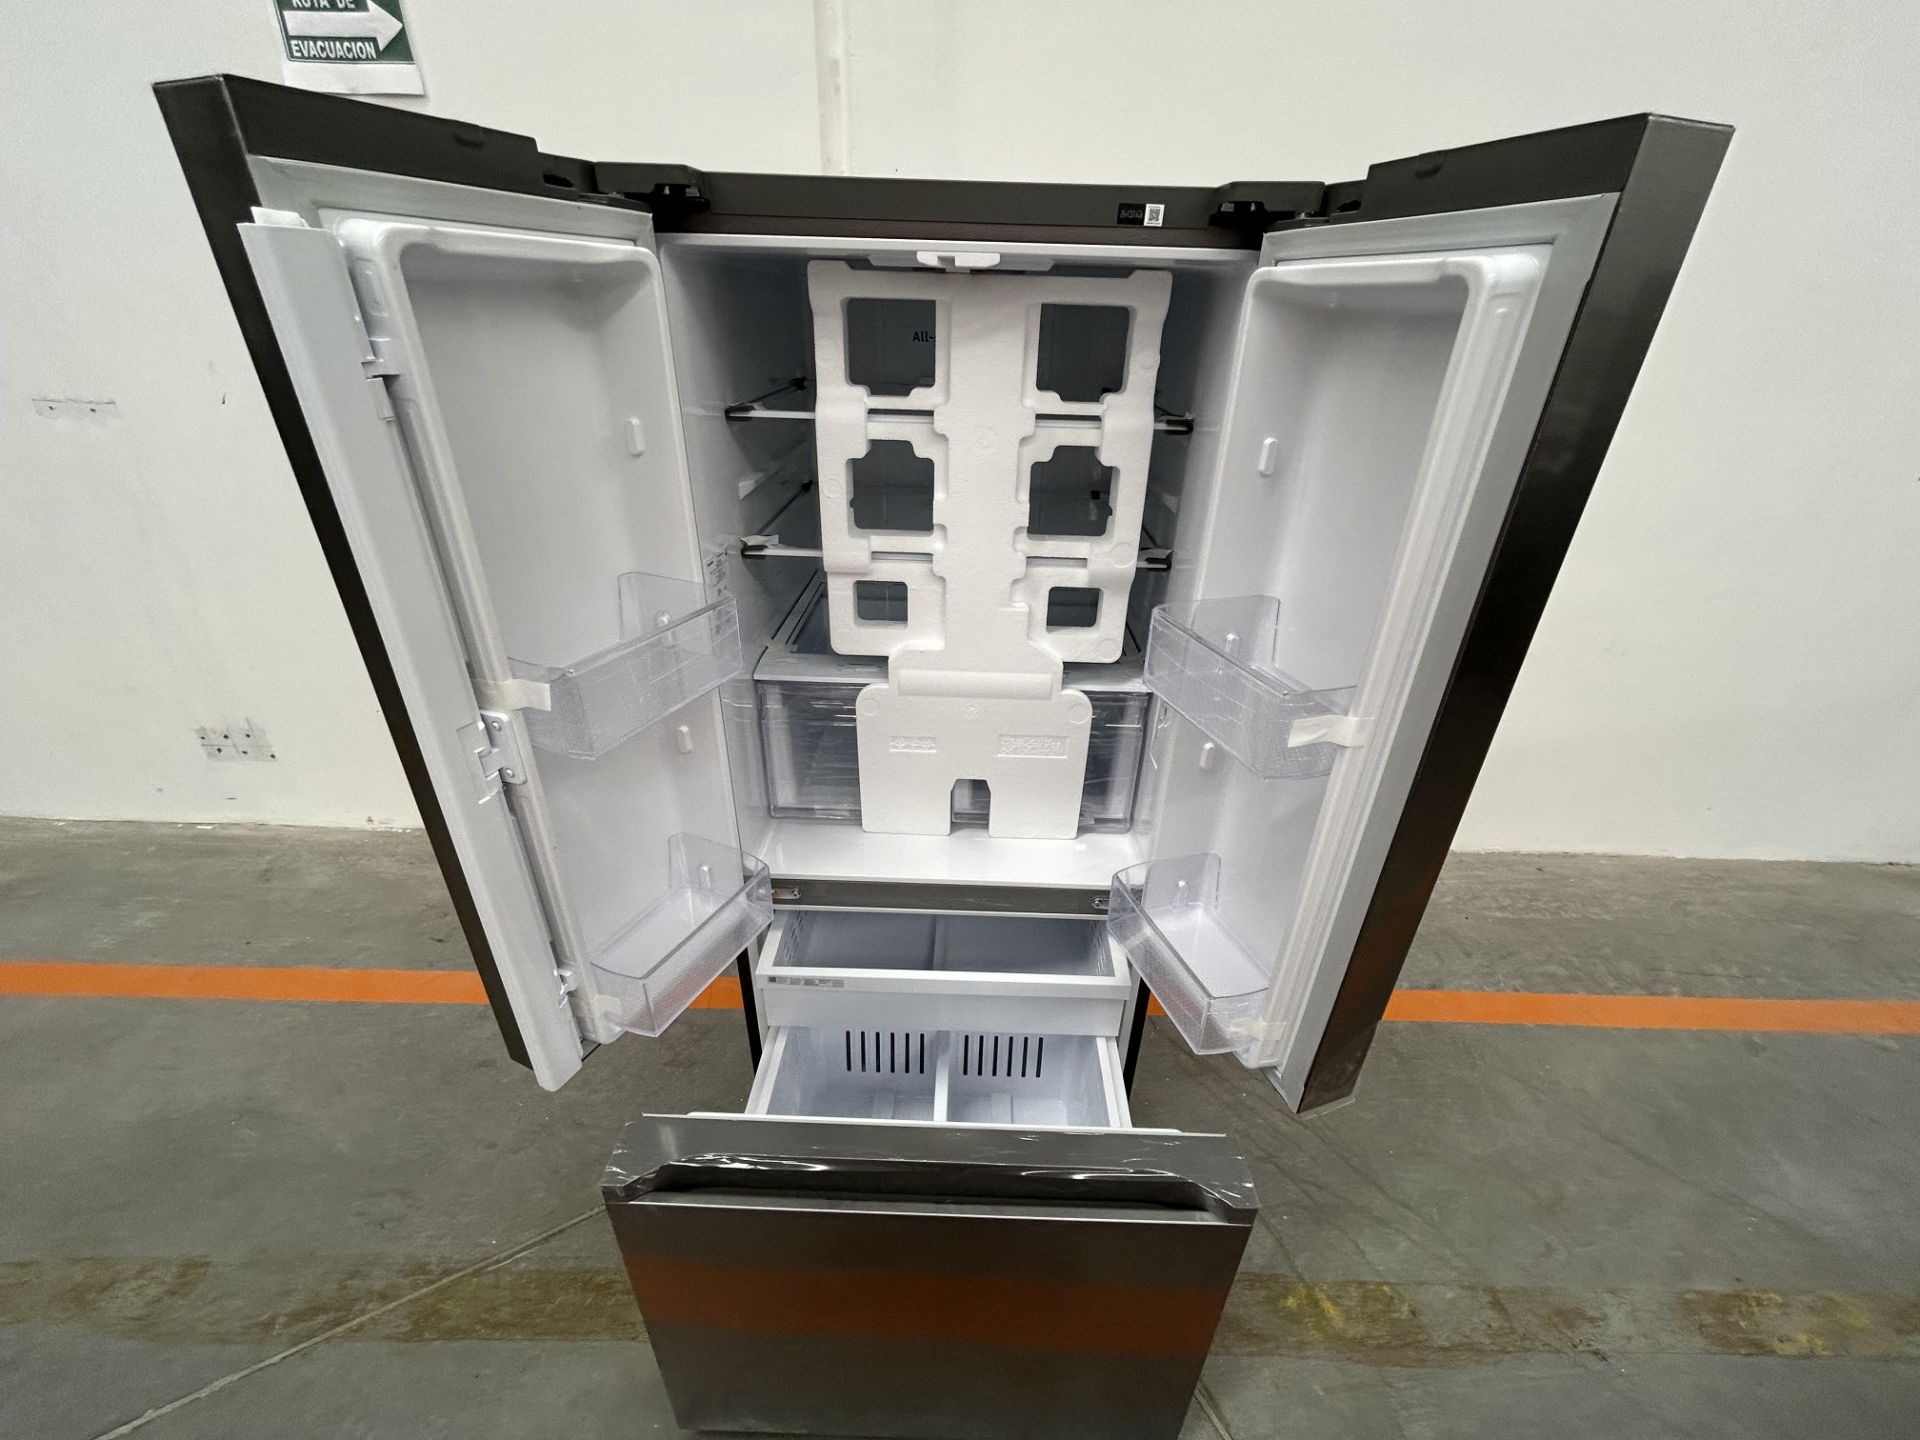 (NUEVO) Refrigerador Marca SAMSUNG, Modelo RF22A410S9, Serie 01875P, Color GRIS - Bild 4 aus 4